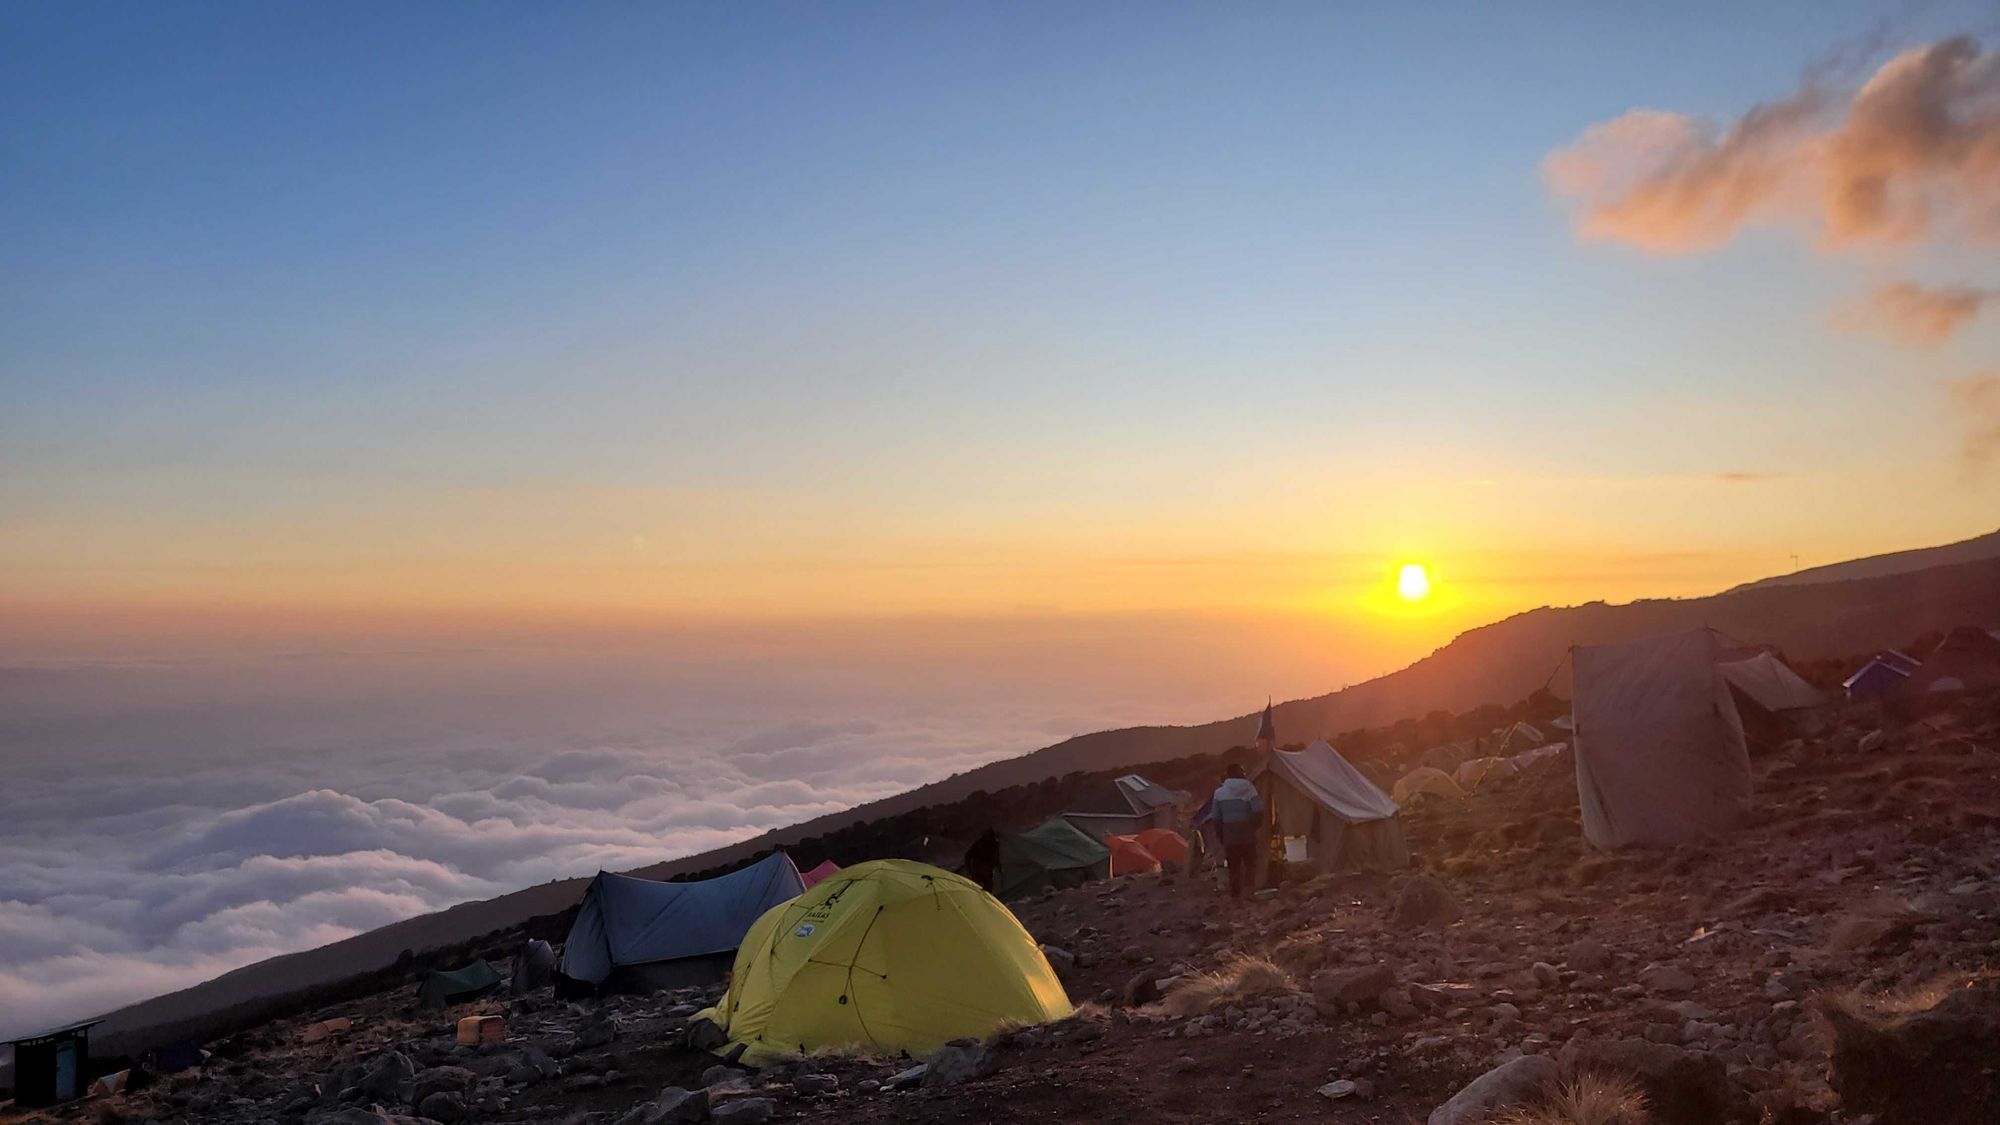 Tents and a cloud inversion at Karanga Camp, Kilimanjaro, Tanzania.